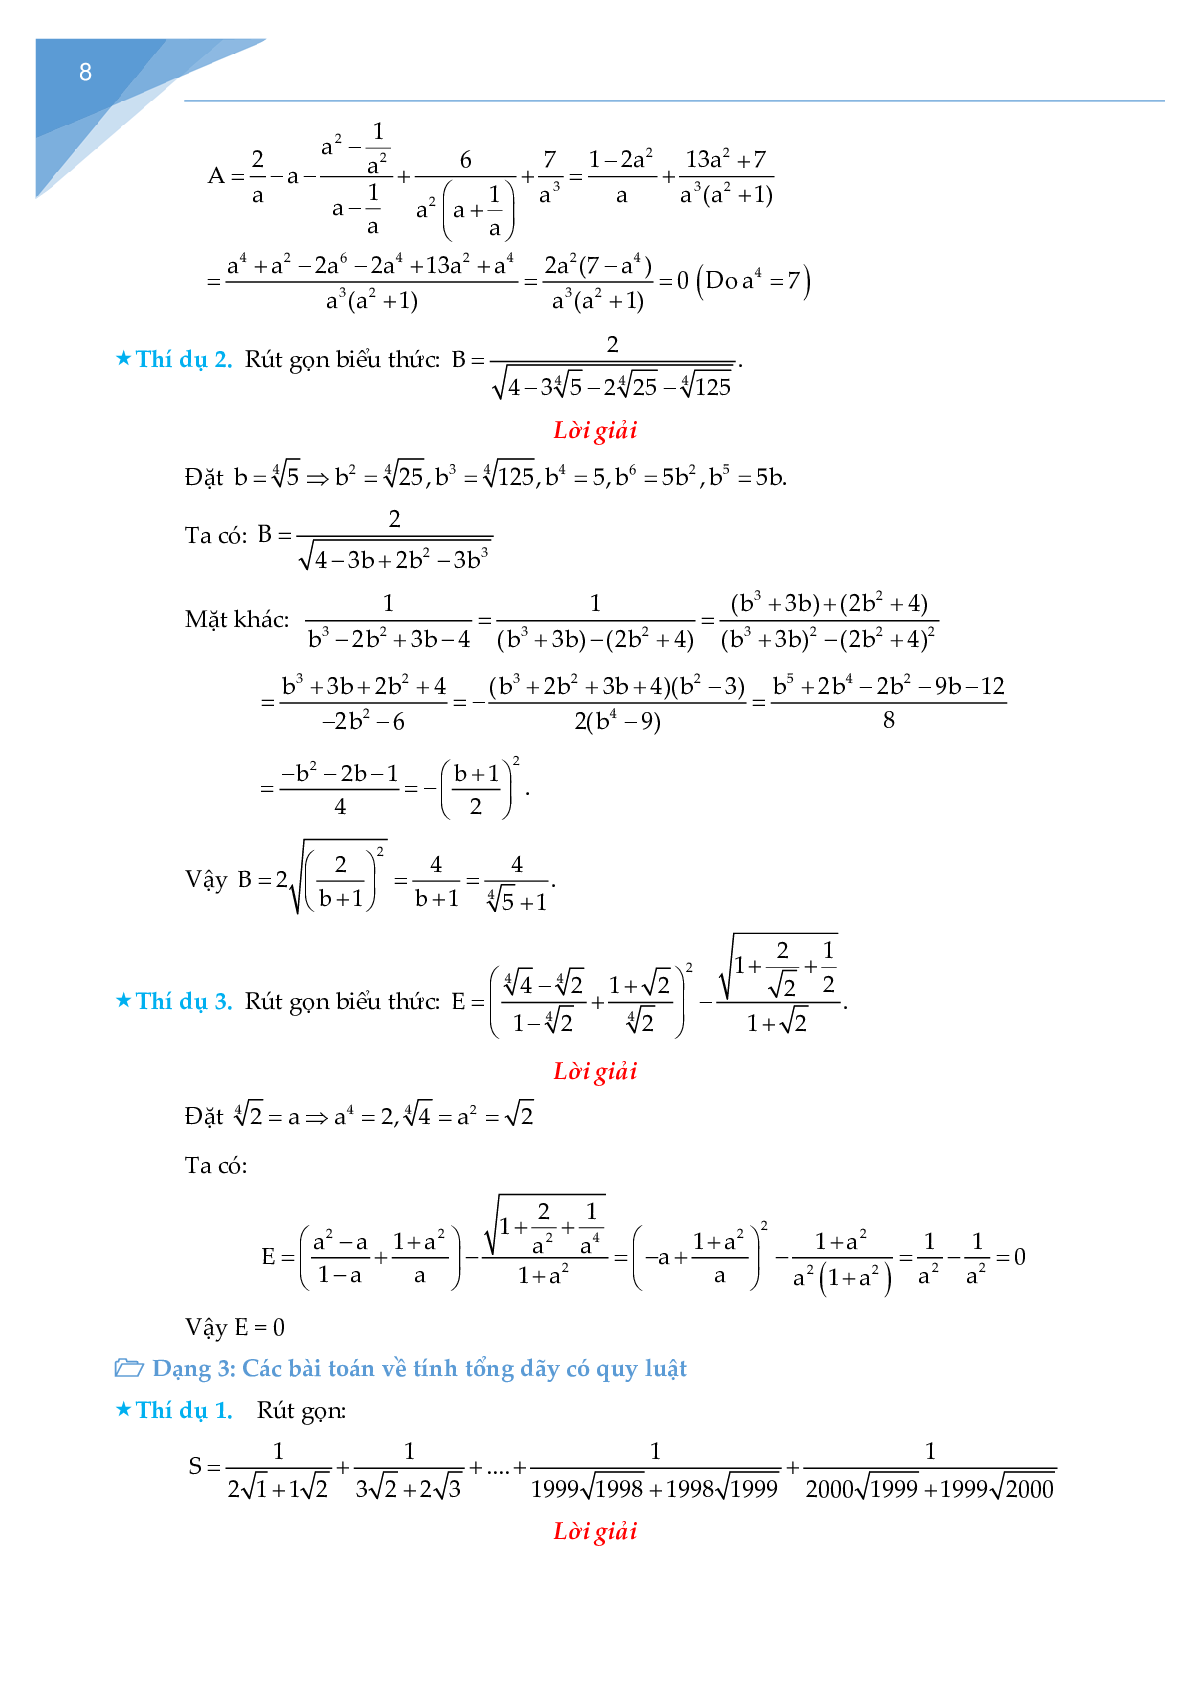 Rút gọn biểu thức chứa căn và bài toán liên quan (trang 8)